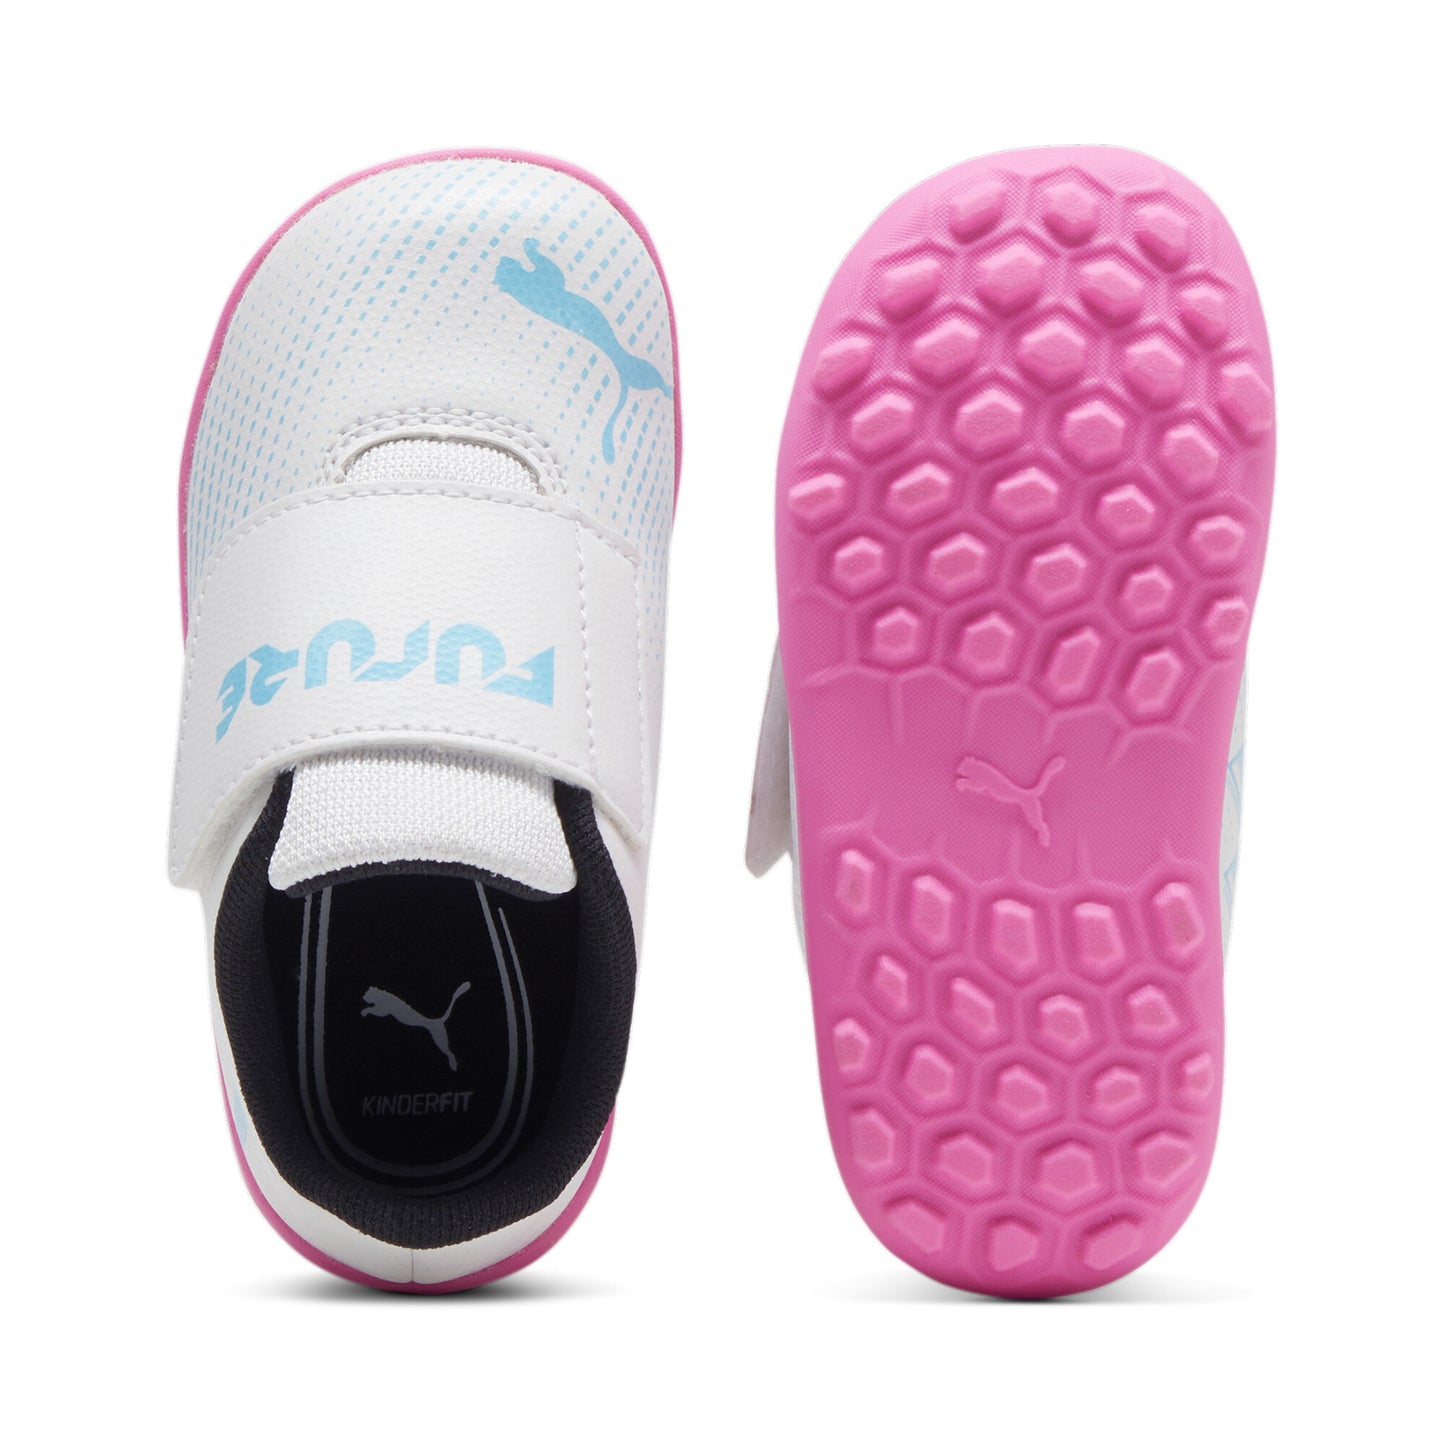 נעלי קטרגל לתינוקות FUTURE 7 PLAY בצבע לבן וורוד